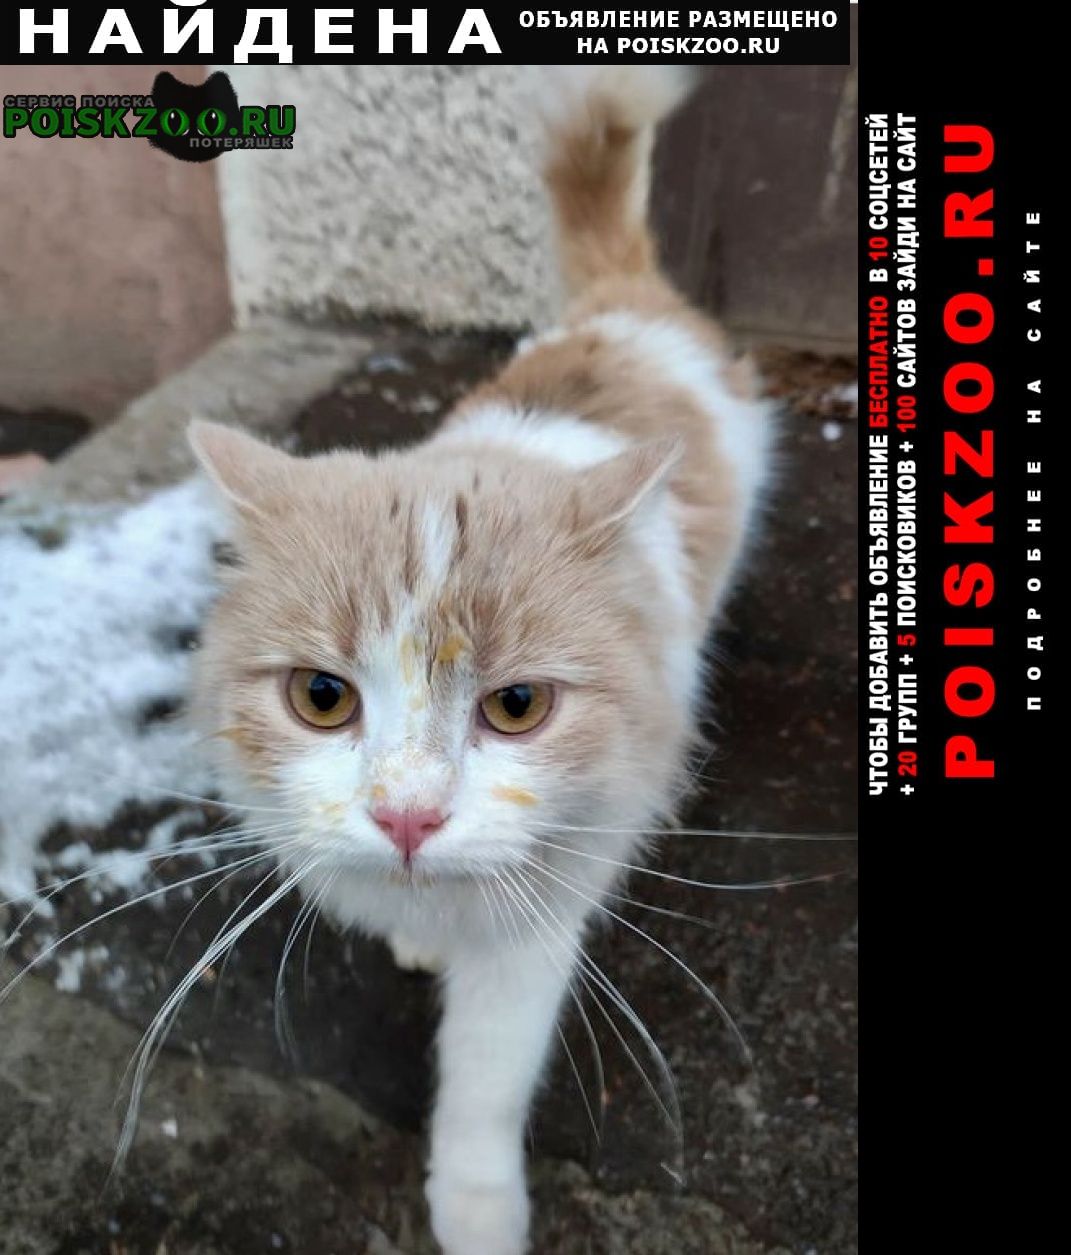 Найдена кошка рыже-бедая Подольск